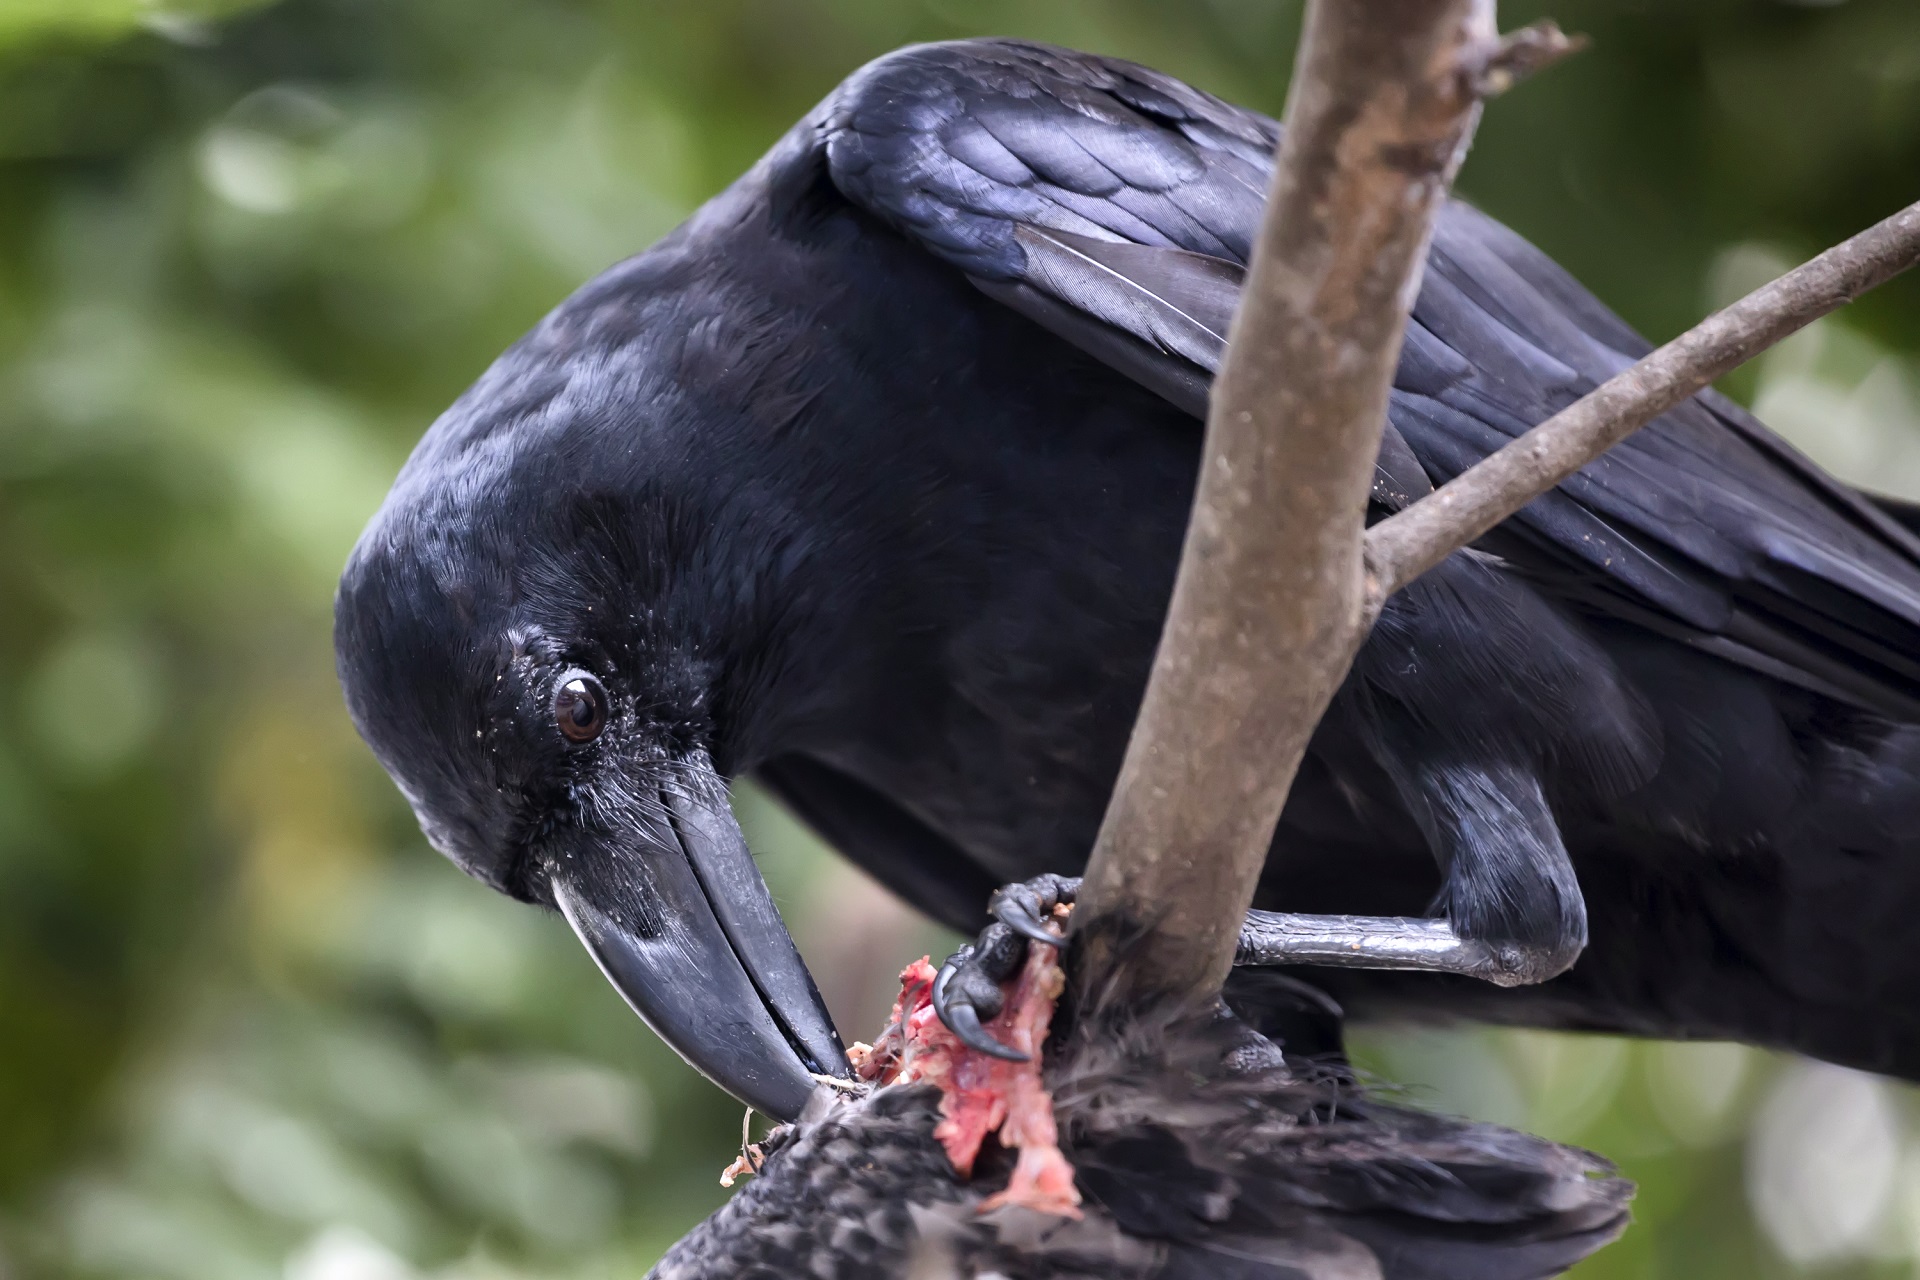 Raven swallowz